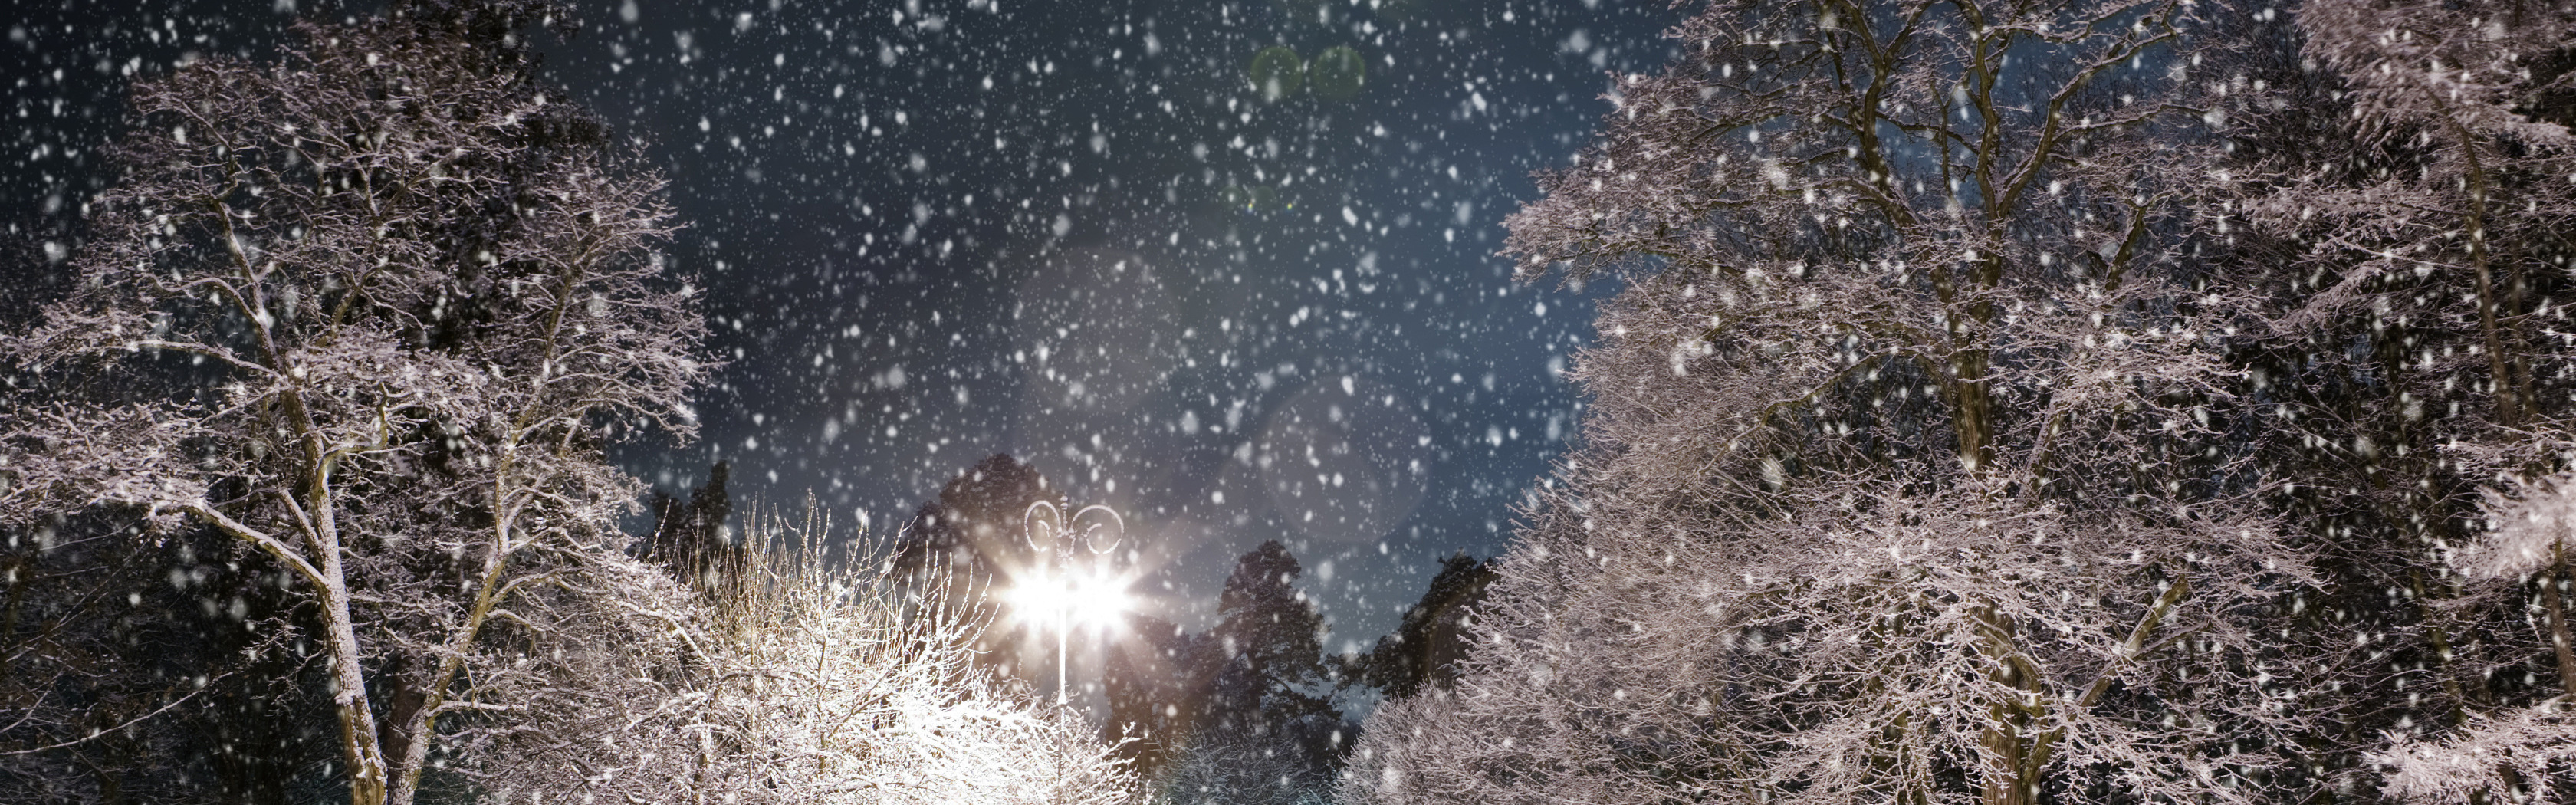 Шум падающего снега. Падающий снег. Метель ночью. Вечер снег идет деревья. Снегопад небо.